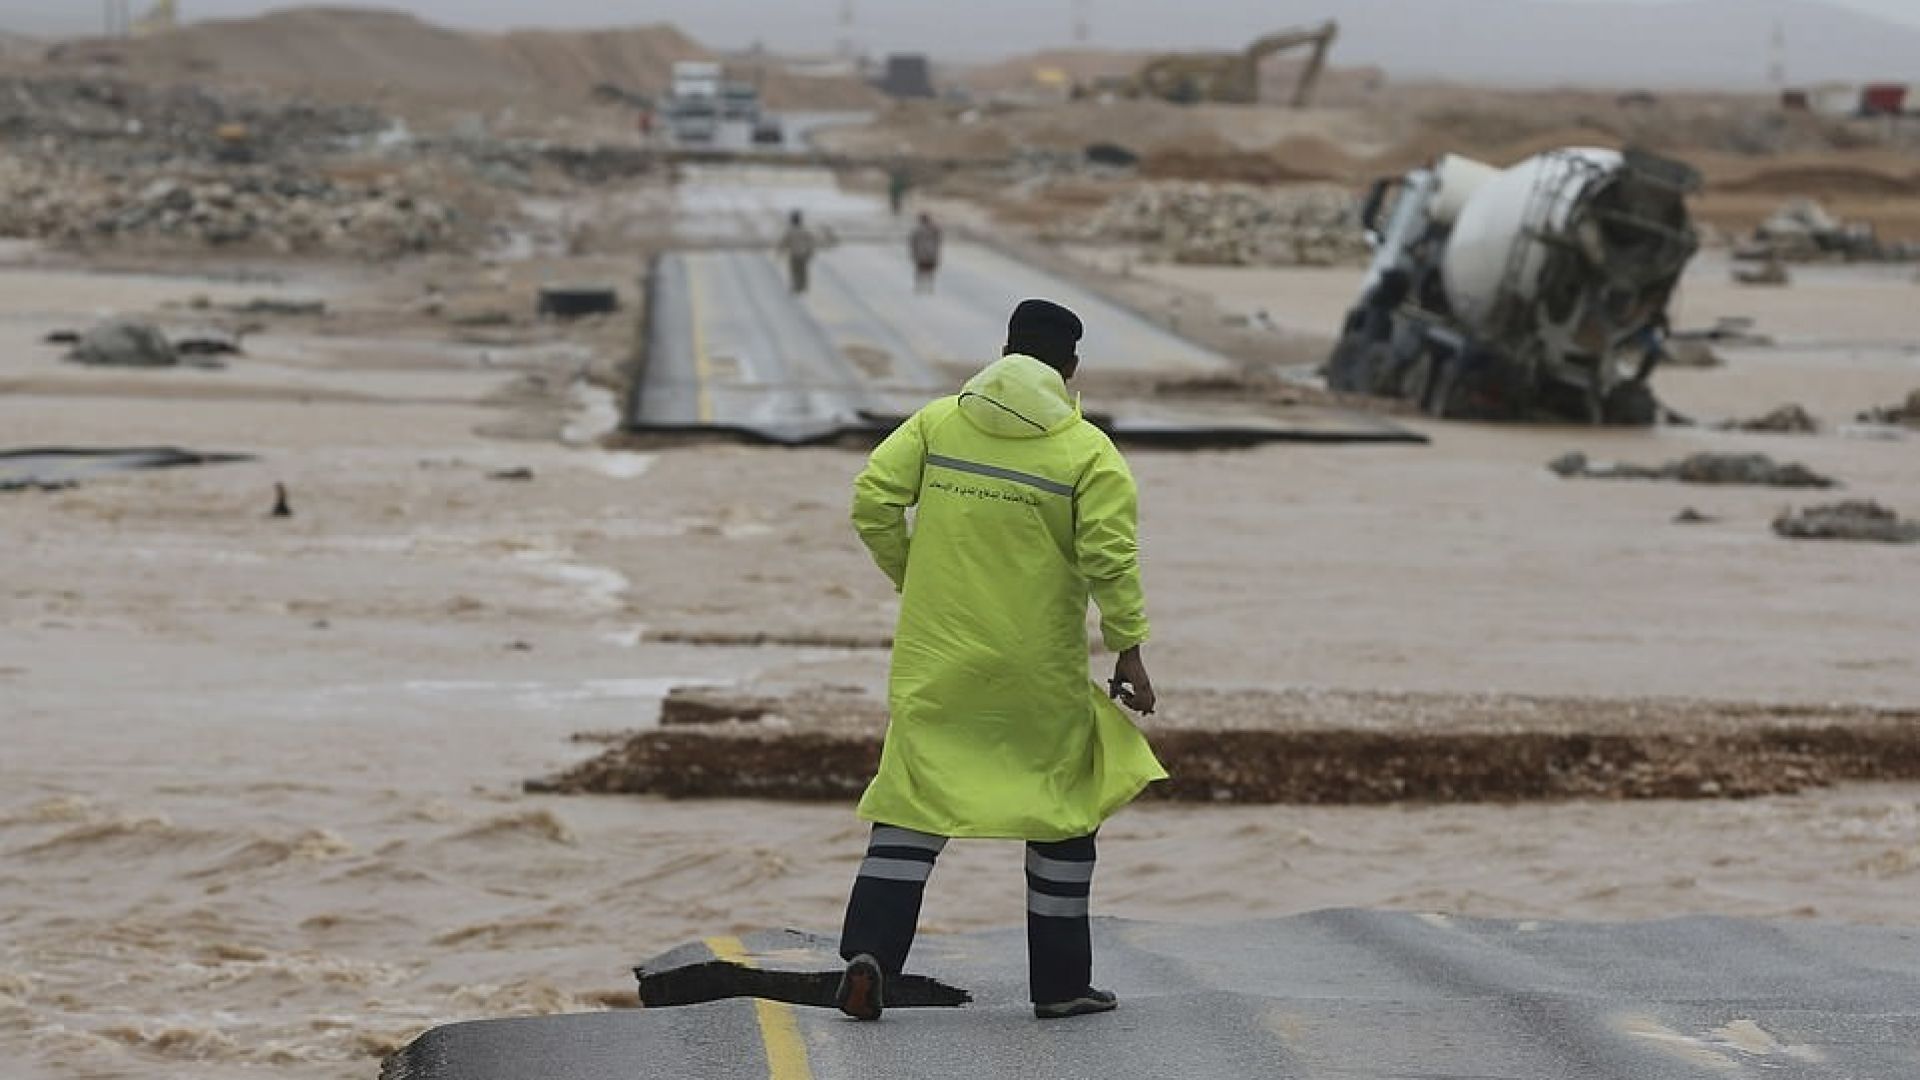 Времето полудя: Буря предизвика наводнение в пустинята (Видео)